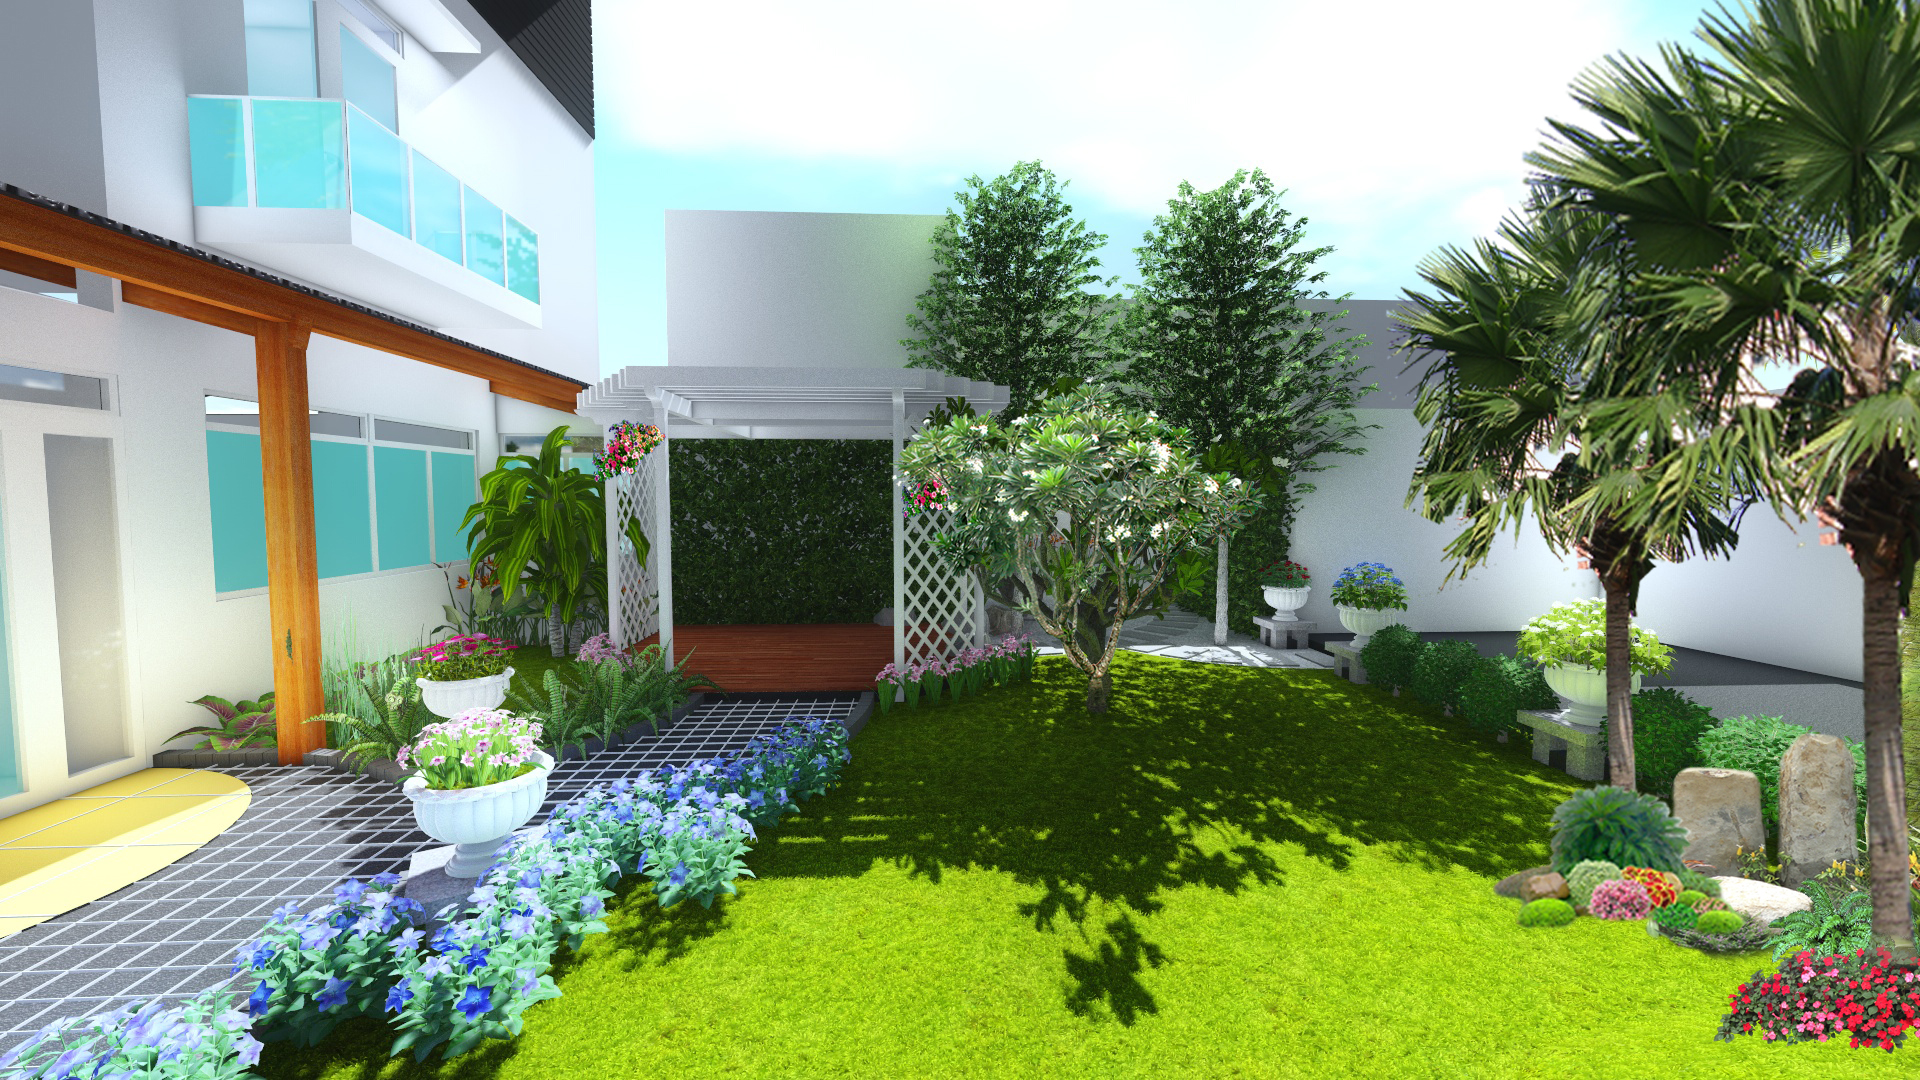 Cây xanh là hạng mục không thể thiếu trong thiết kế sân vườn biệt thự